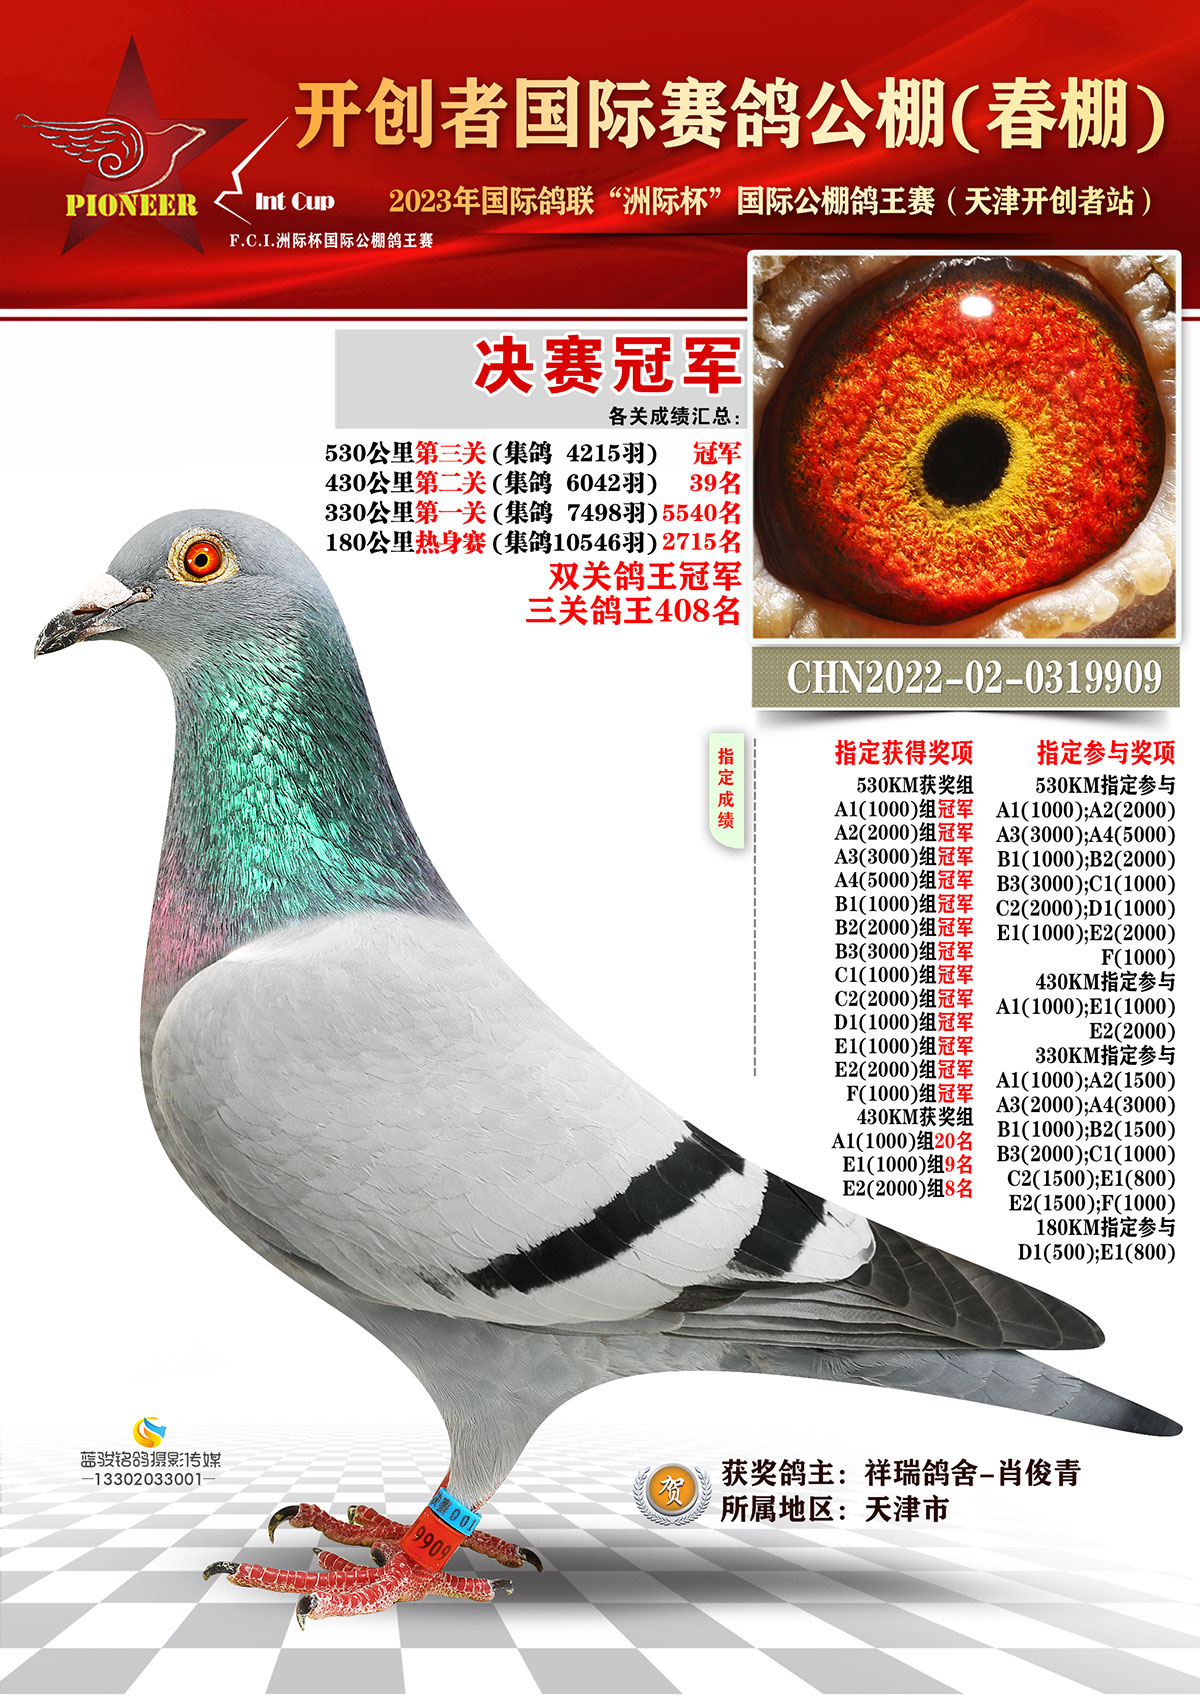 2021年种鸽配对如下：_藏经阁_赛鸽资讯网